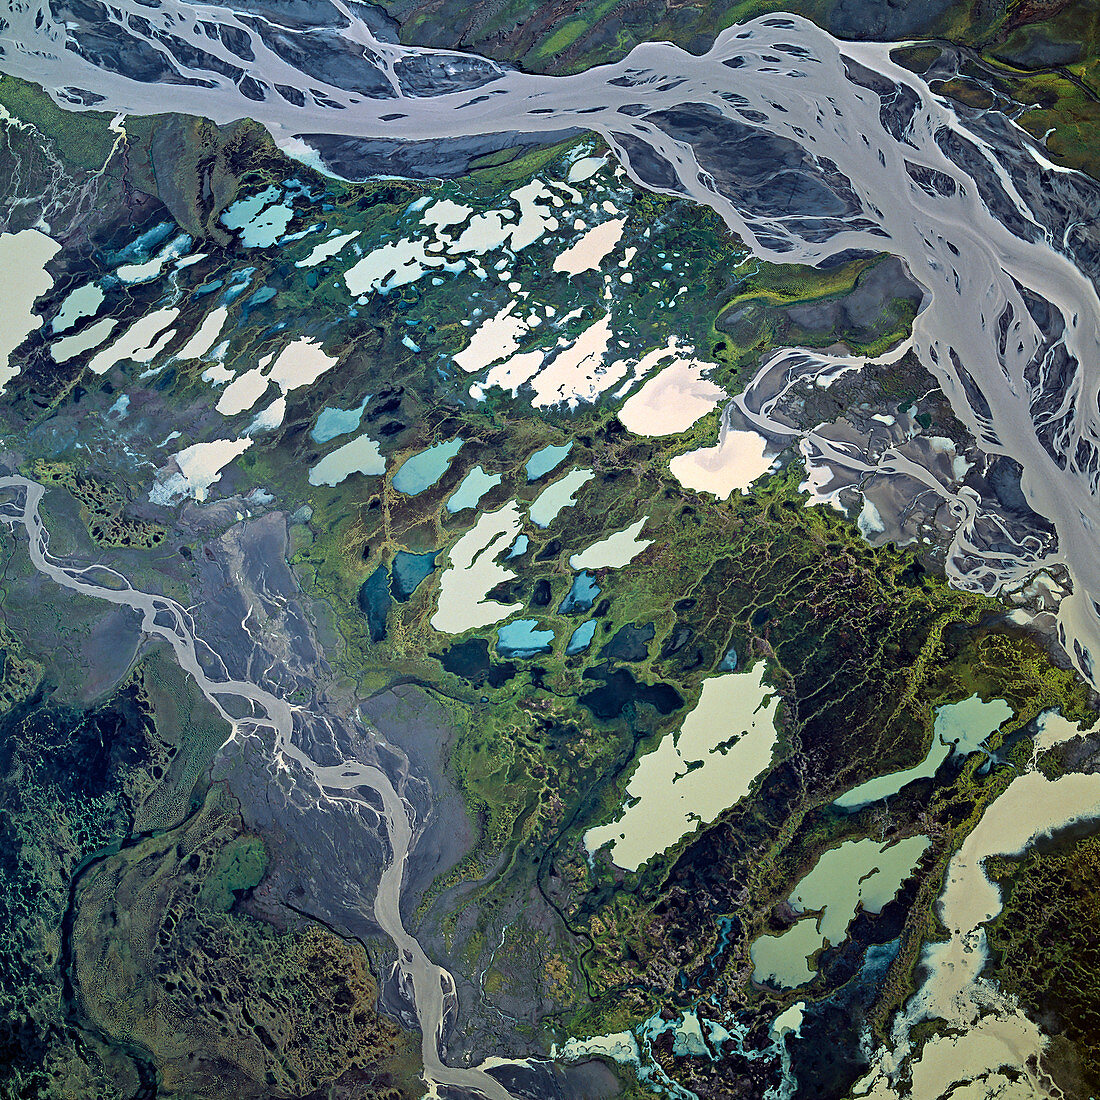 Melting permafrost